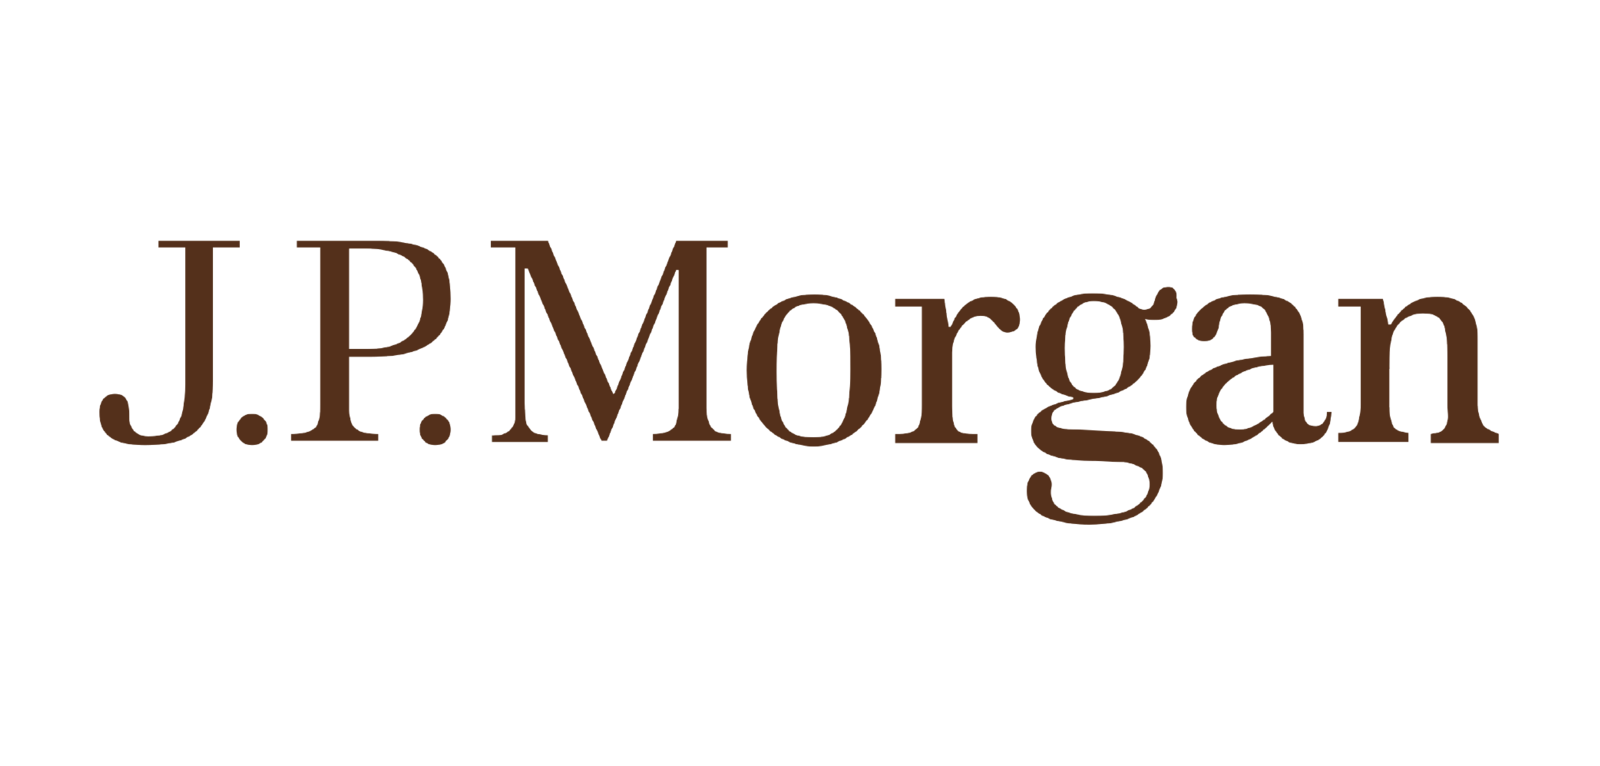 J.P Morgan Logo